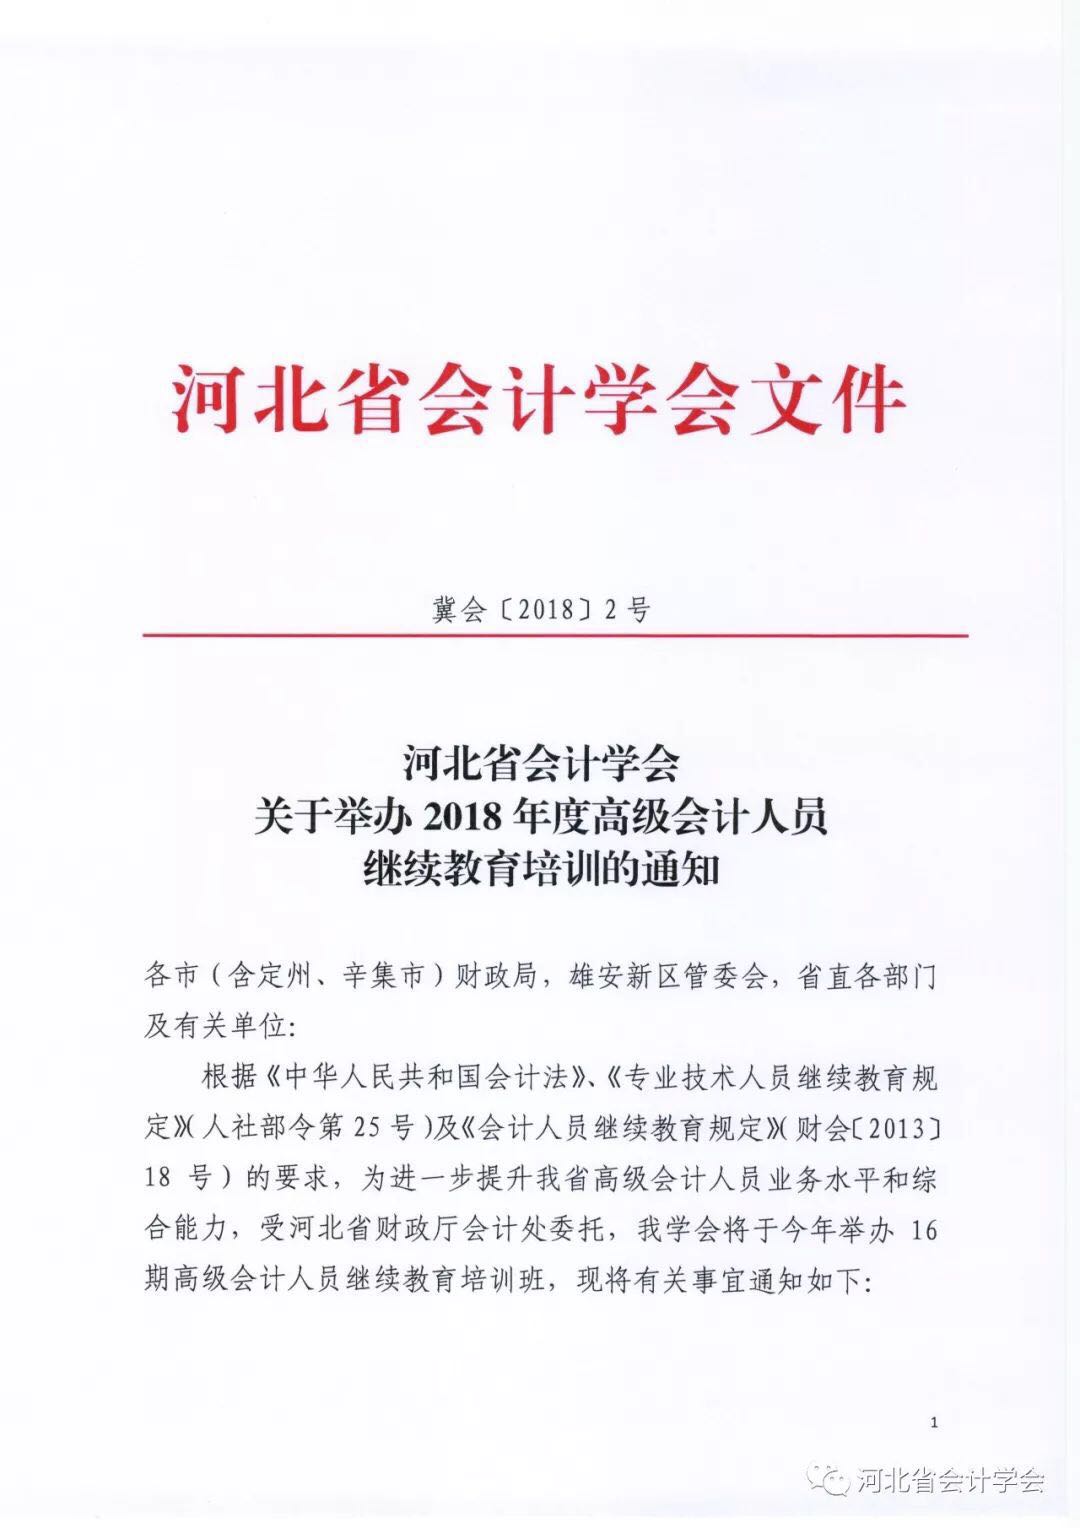 河北省会计学会关于举办2018年度高级会计人